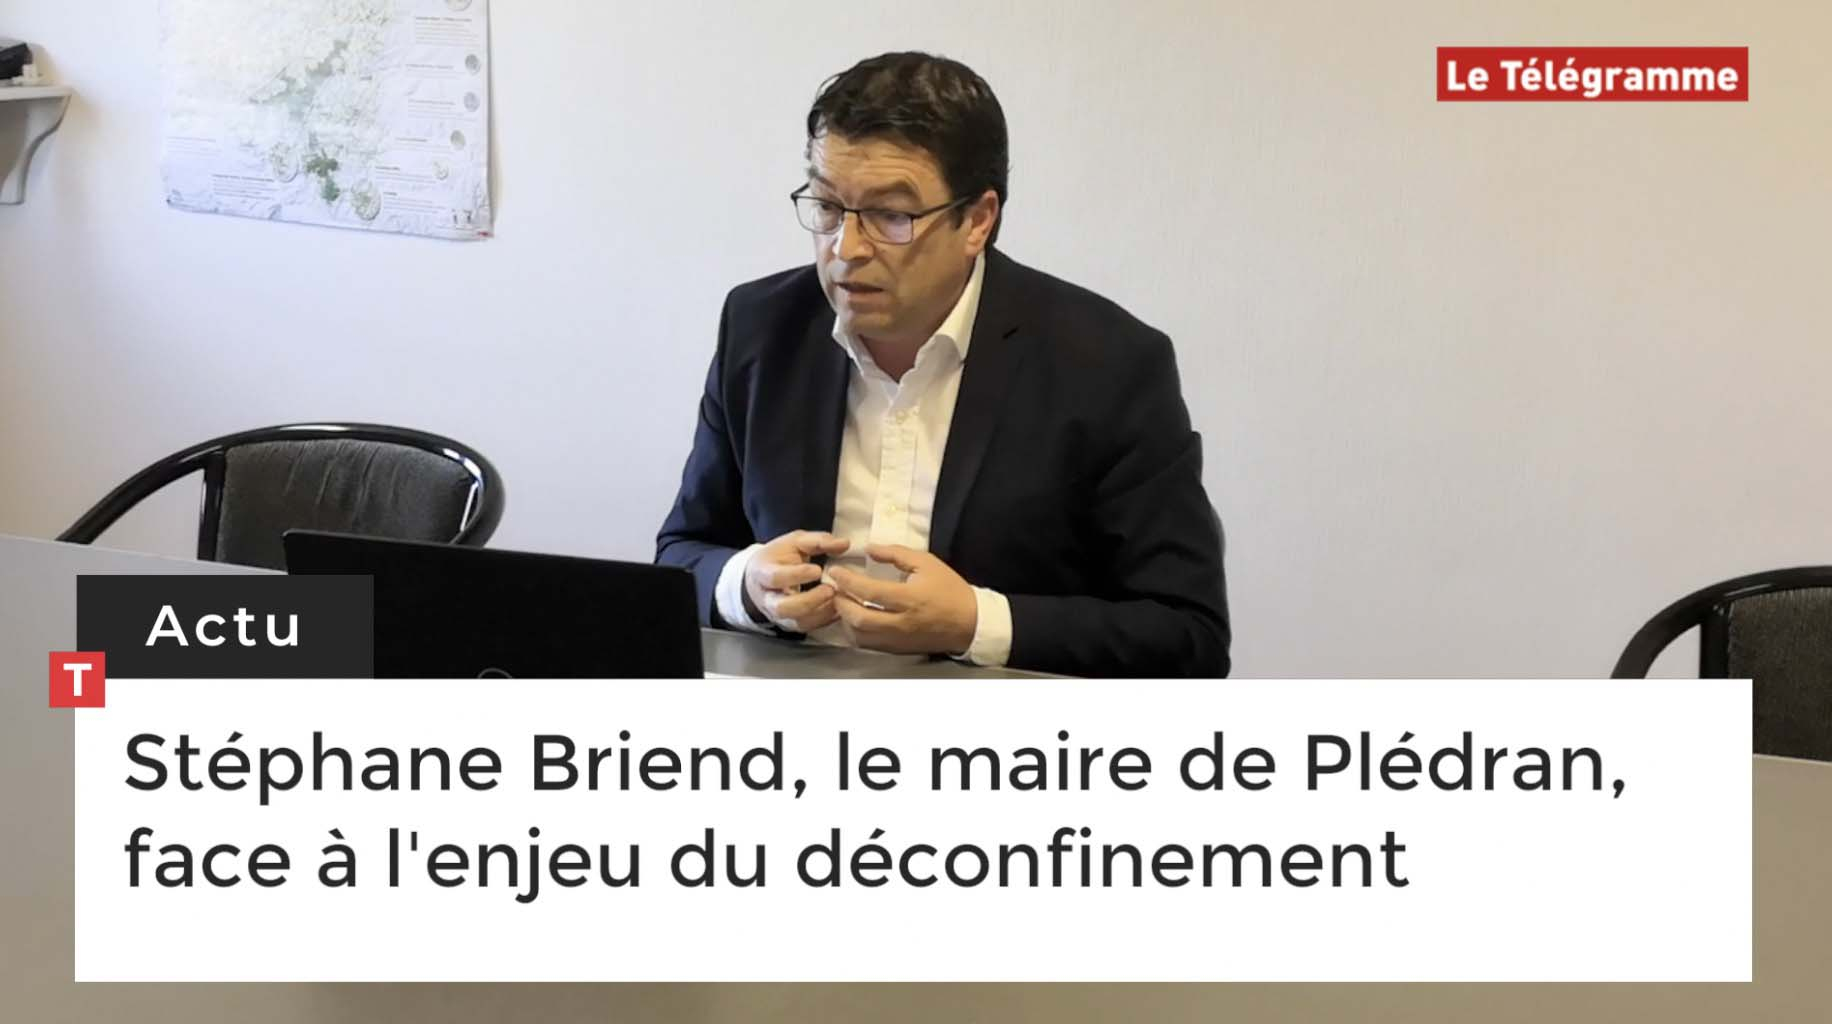 Stéphane Briend, le maire de Plédran, face à l'enjeu du déconfinement (Le Télégramme)